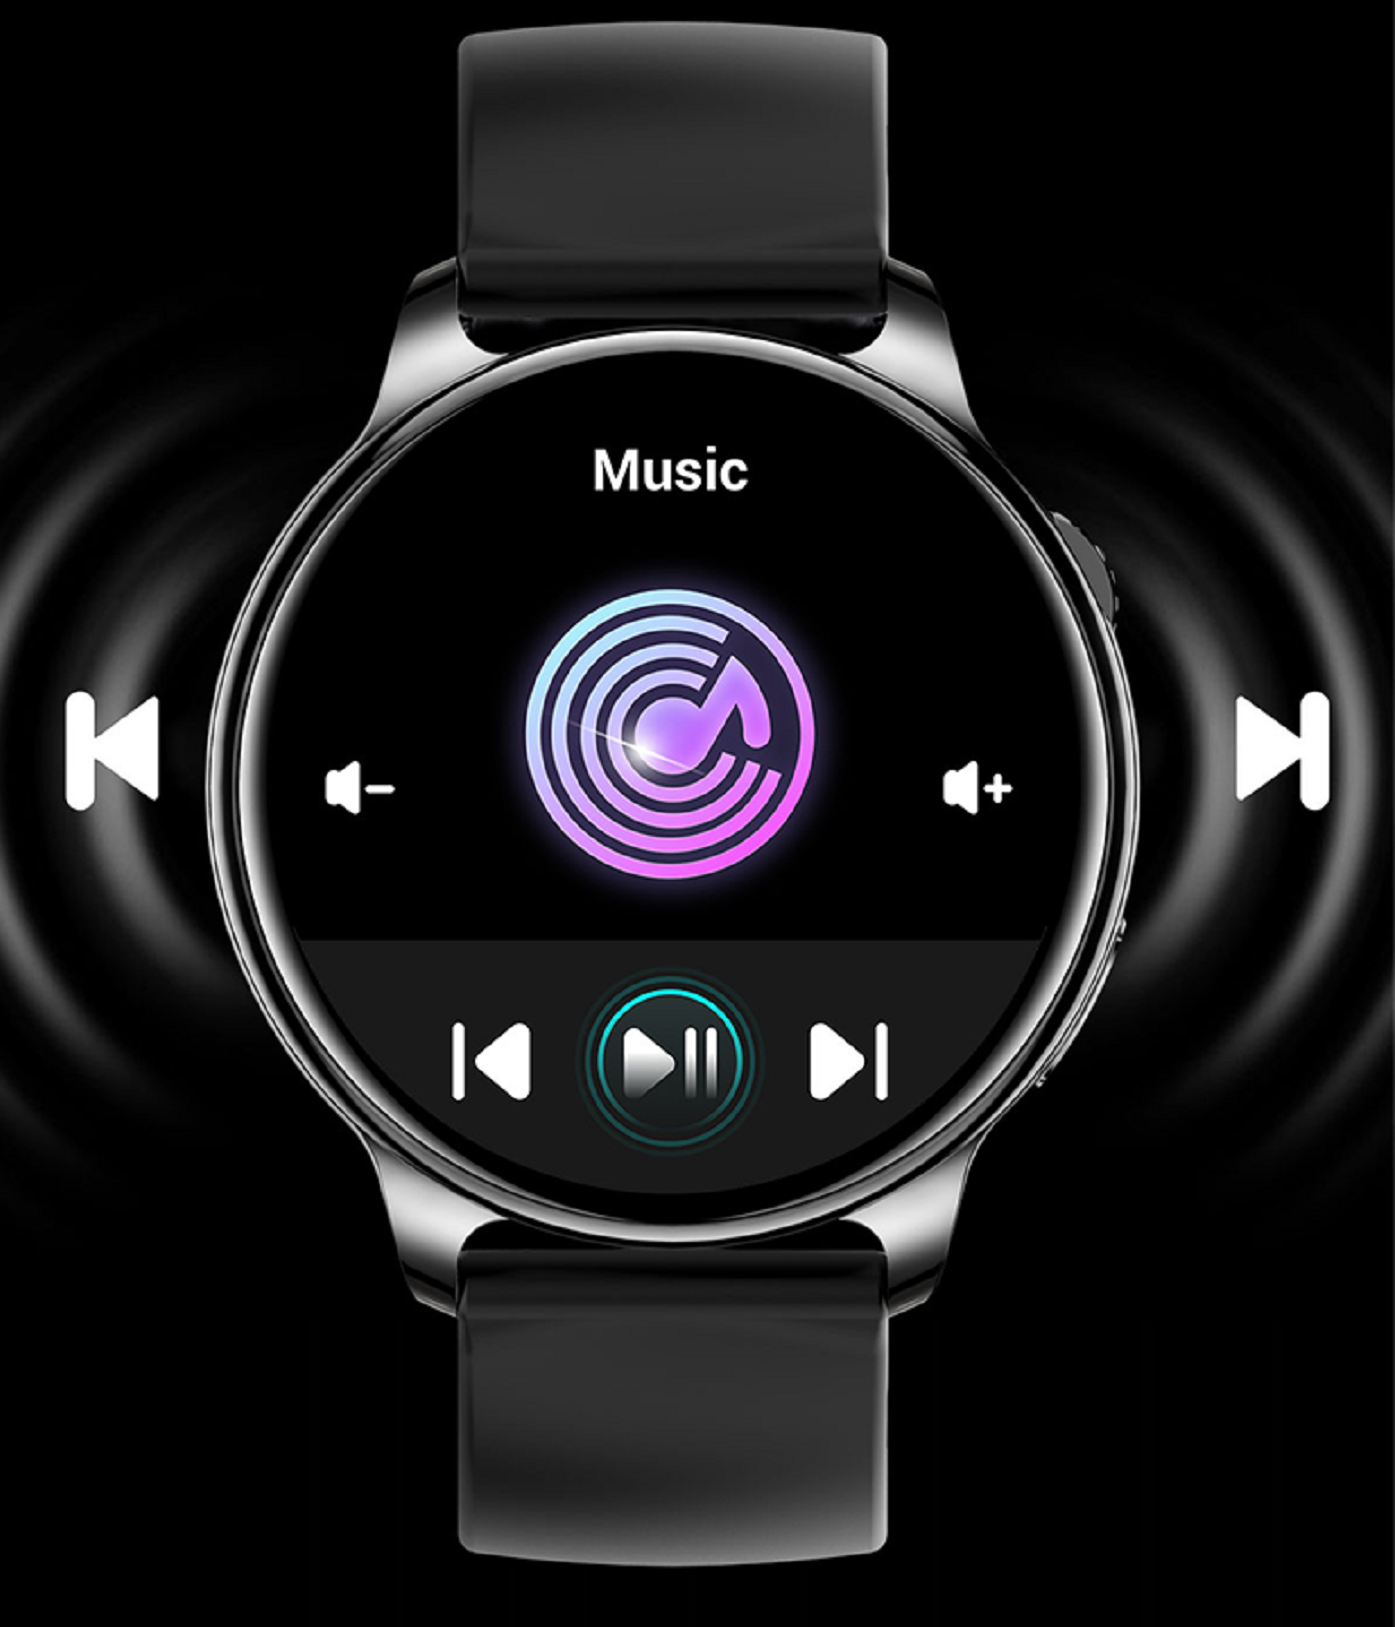 KAREN M KM09 Black Smartwatch Silicone